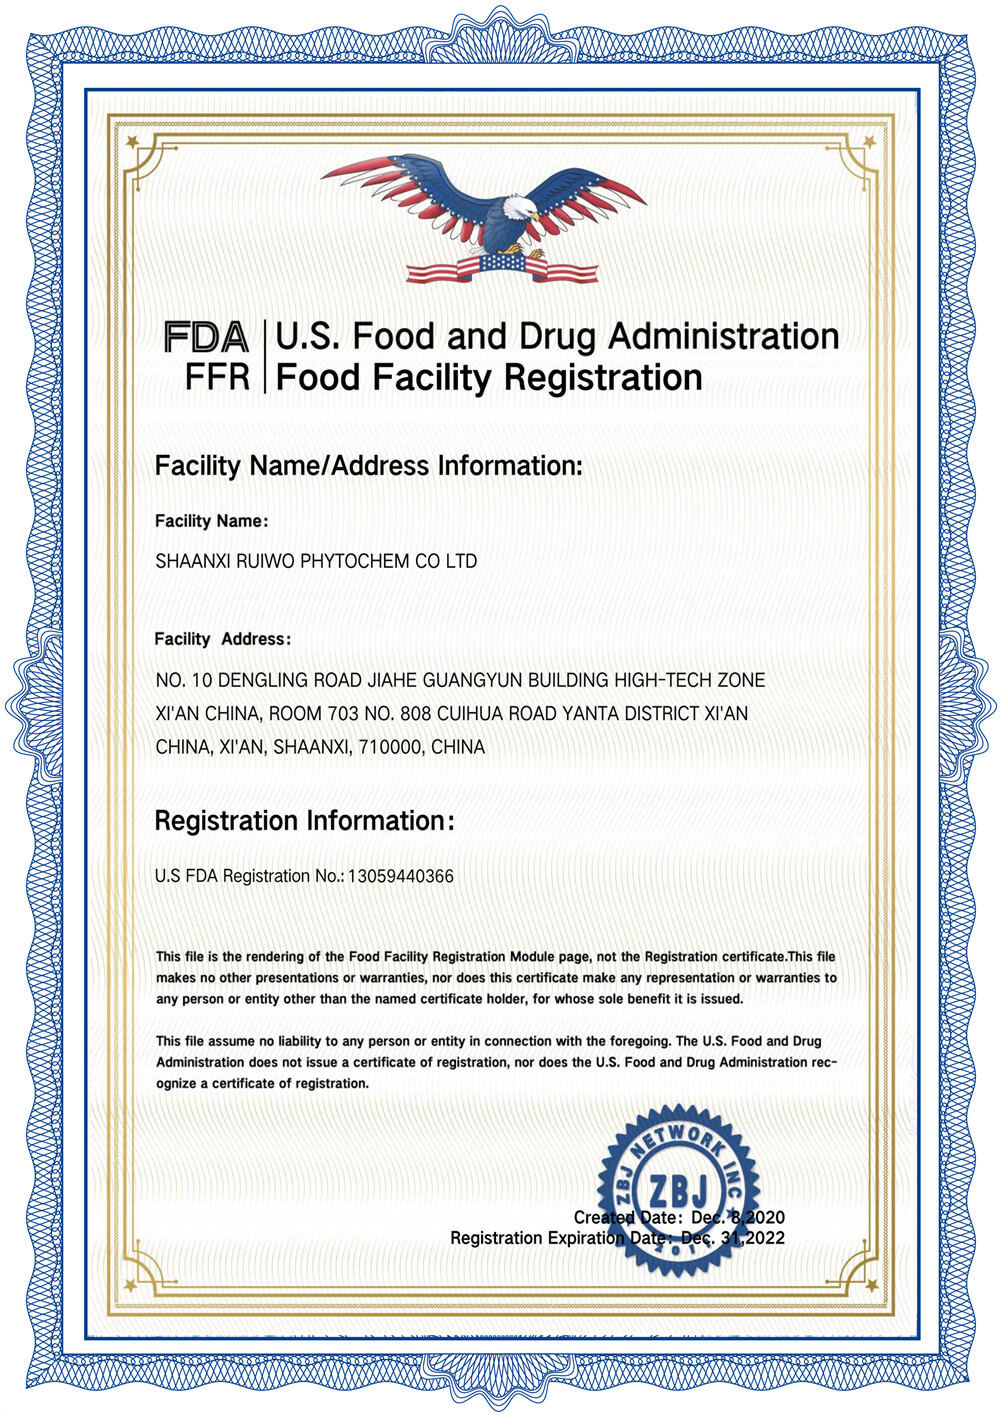 FDA_Registration Number